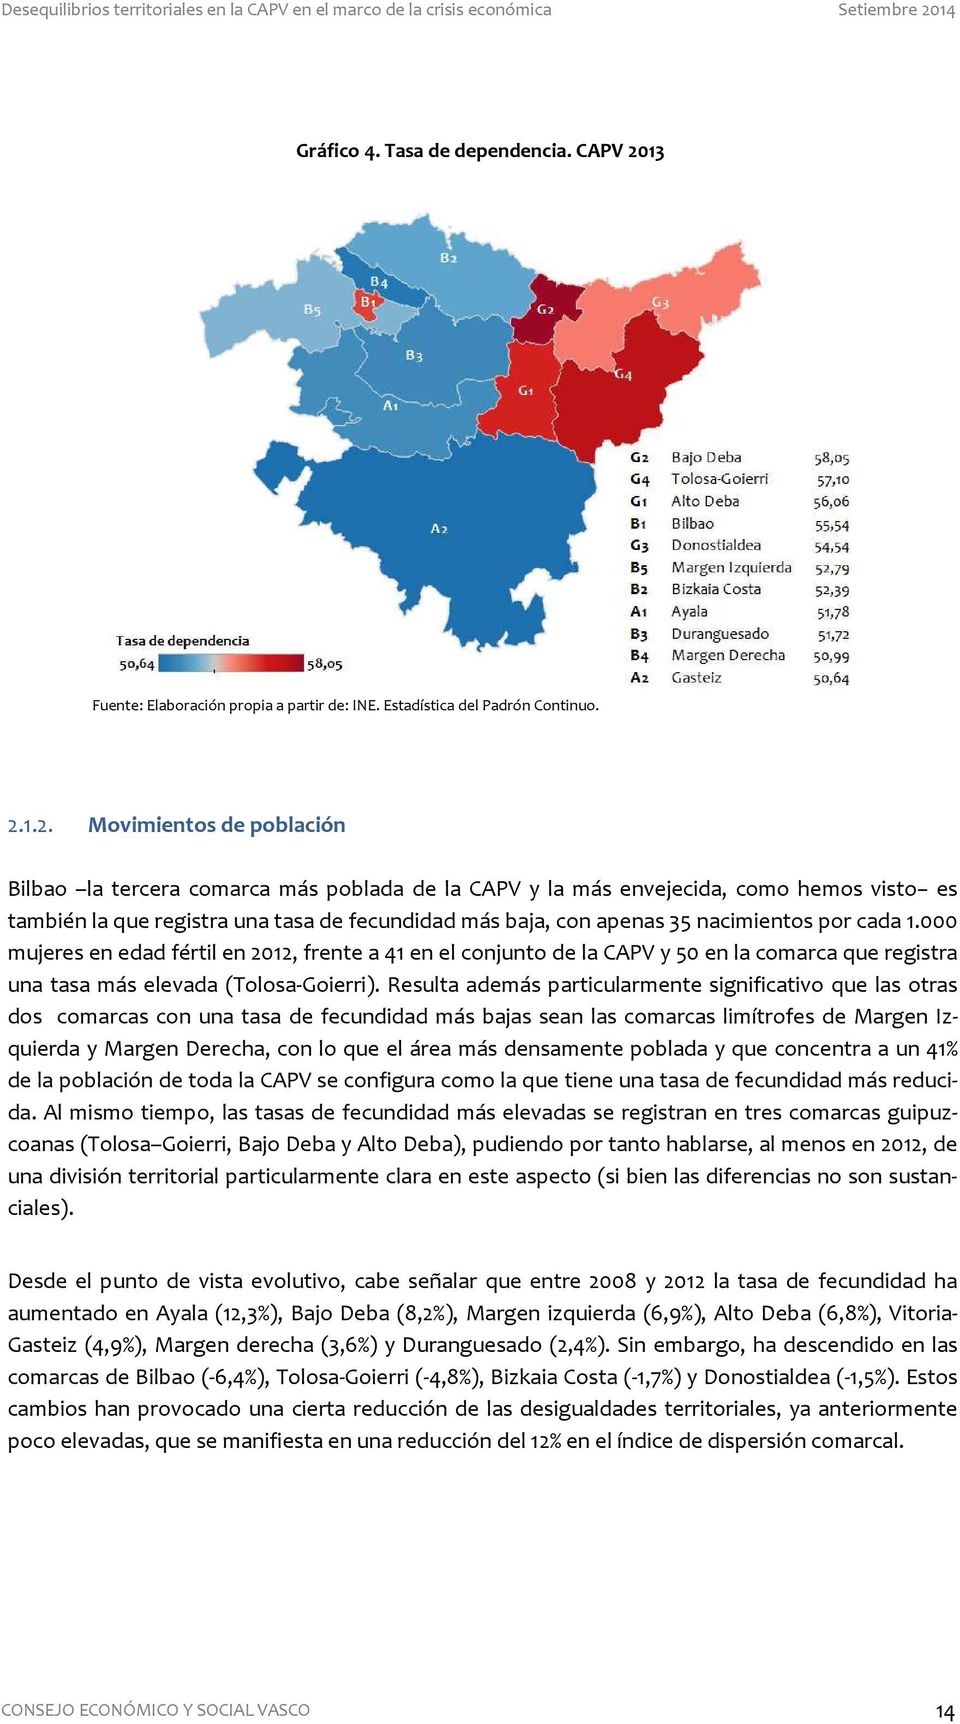 1.2. Movimientos de población Bilbao la tercera comarca más poblada de la CAPV y la más envejecida, como hemos visto es también la que registra una tasa de fecundidad más baja, con apenas 35